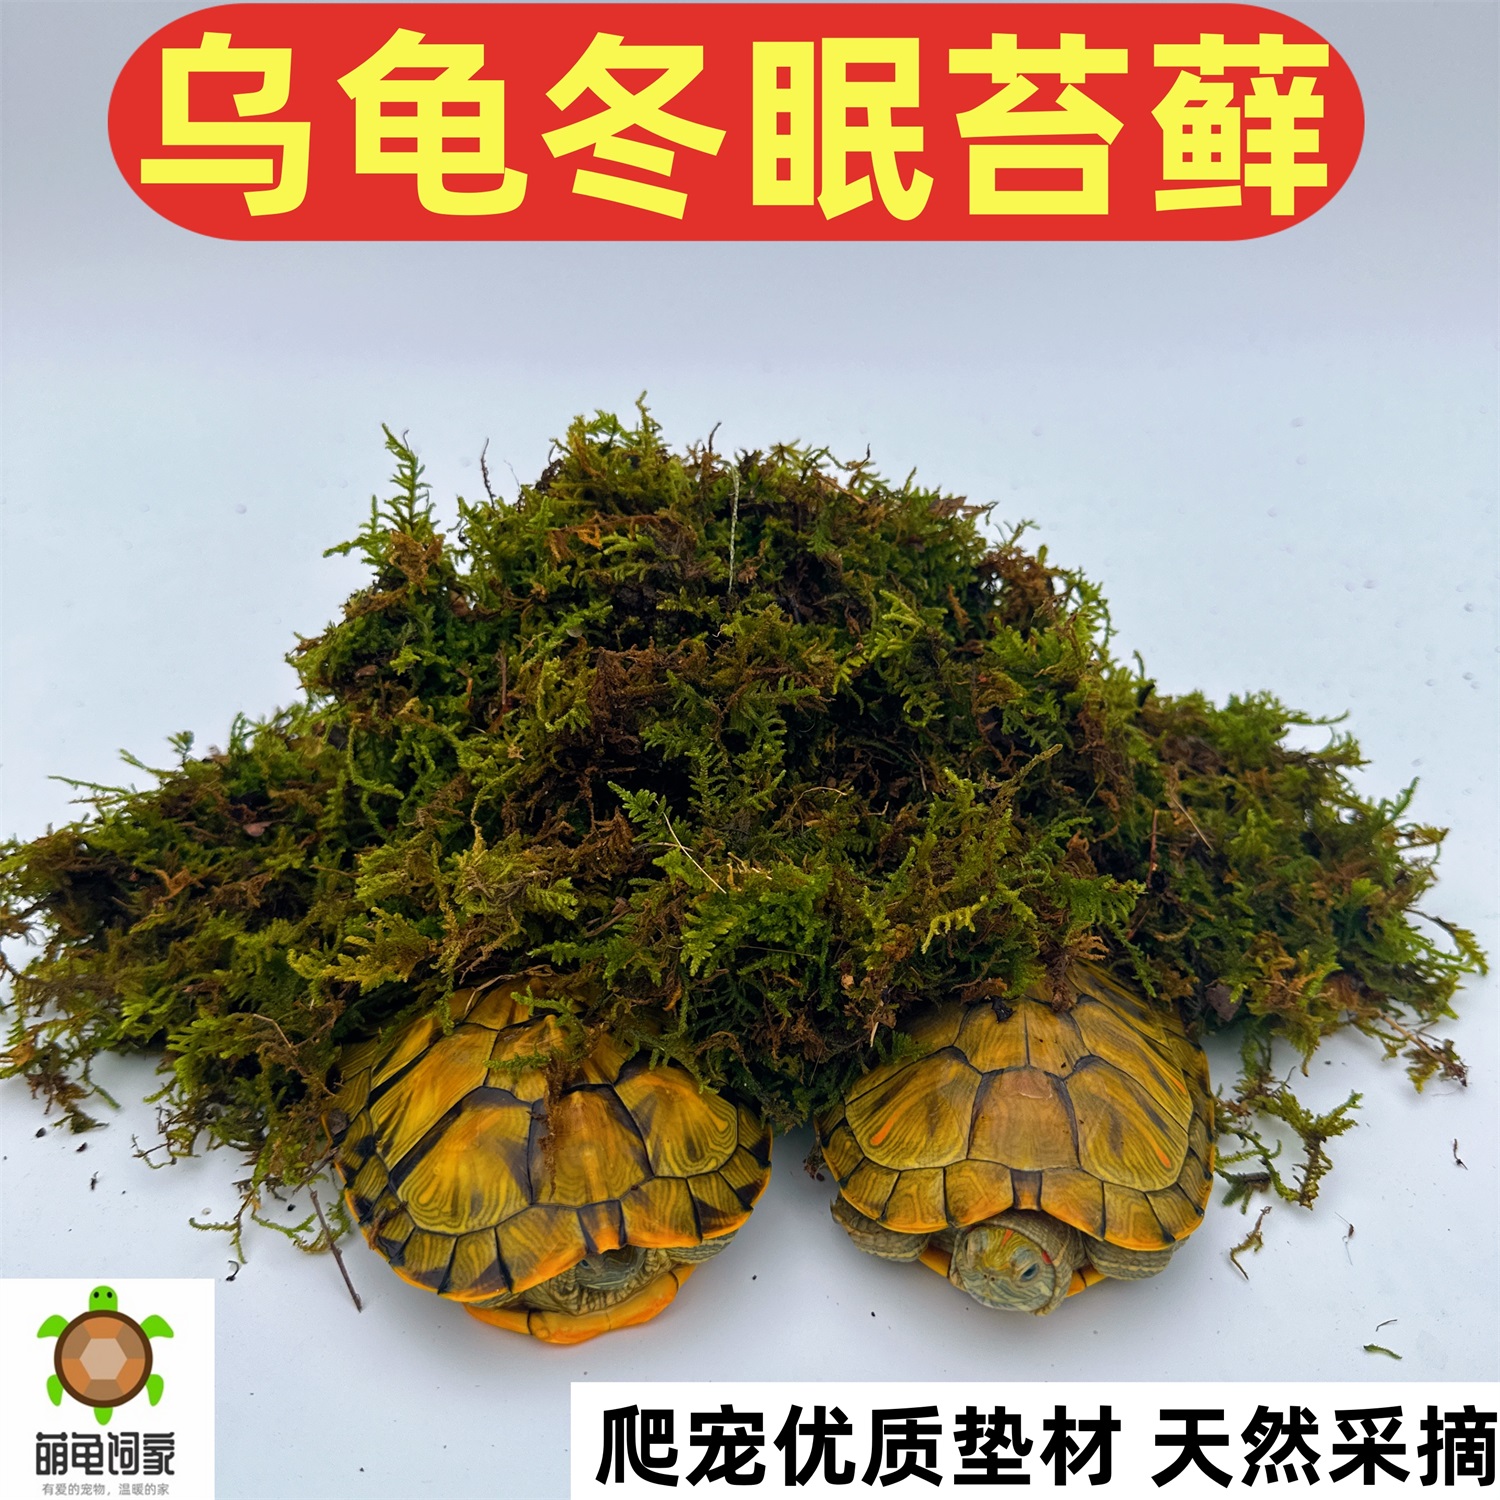 爬宠垫材苔藓保湿乌龟冬眠专用过冬用品椰砖椰土干草龟巴西龟专用